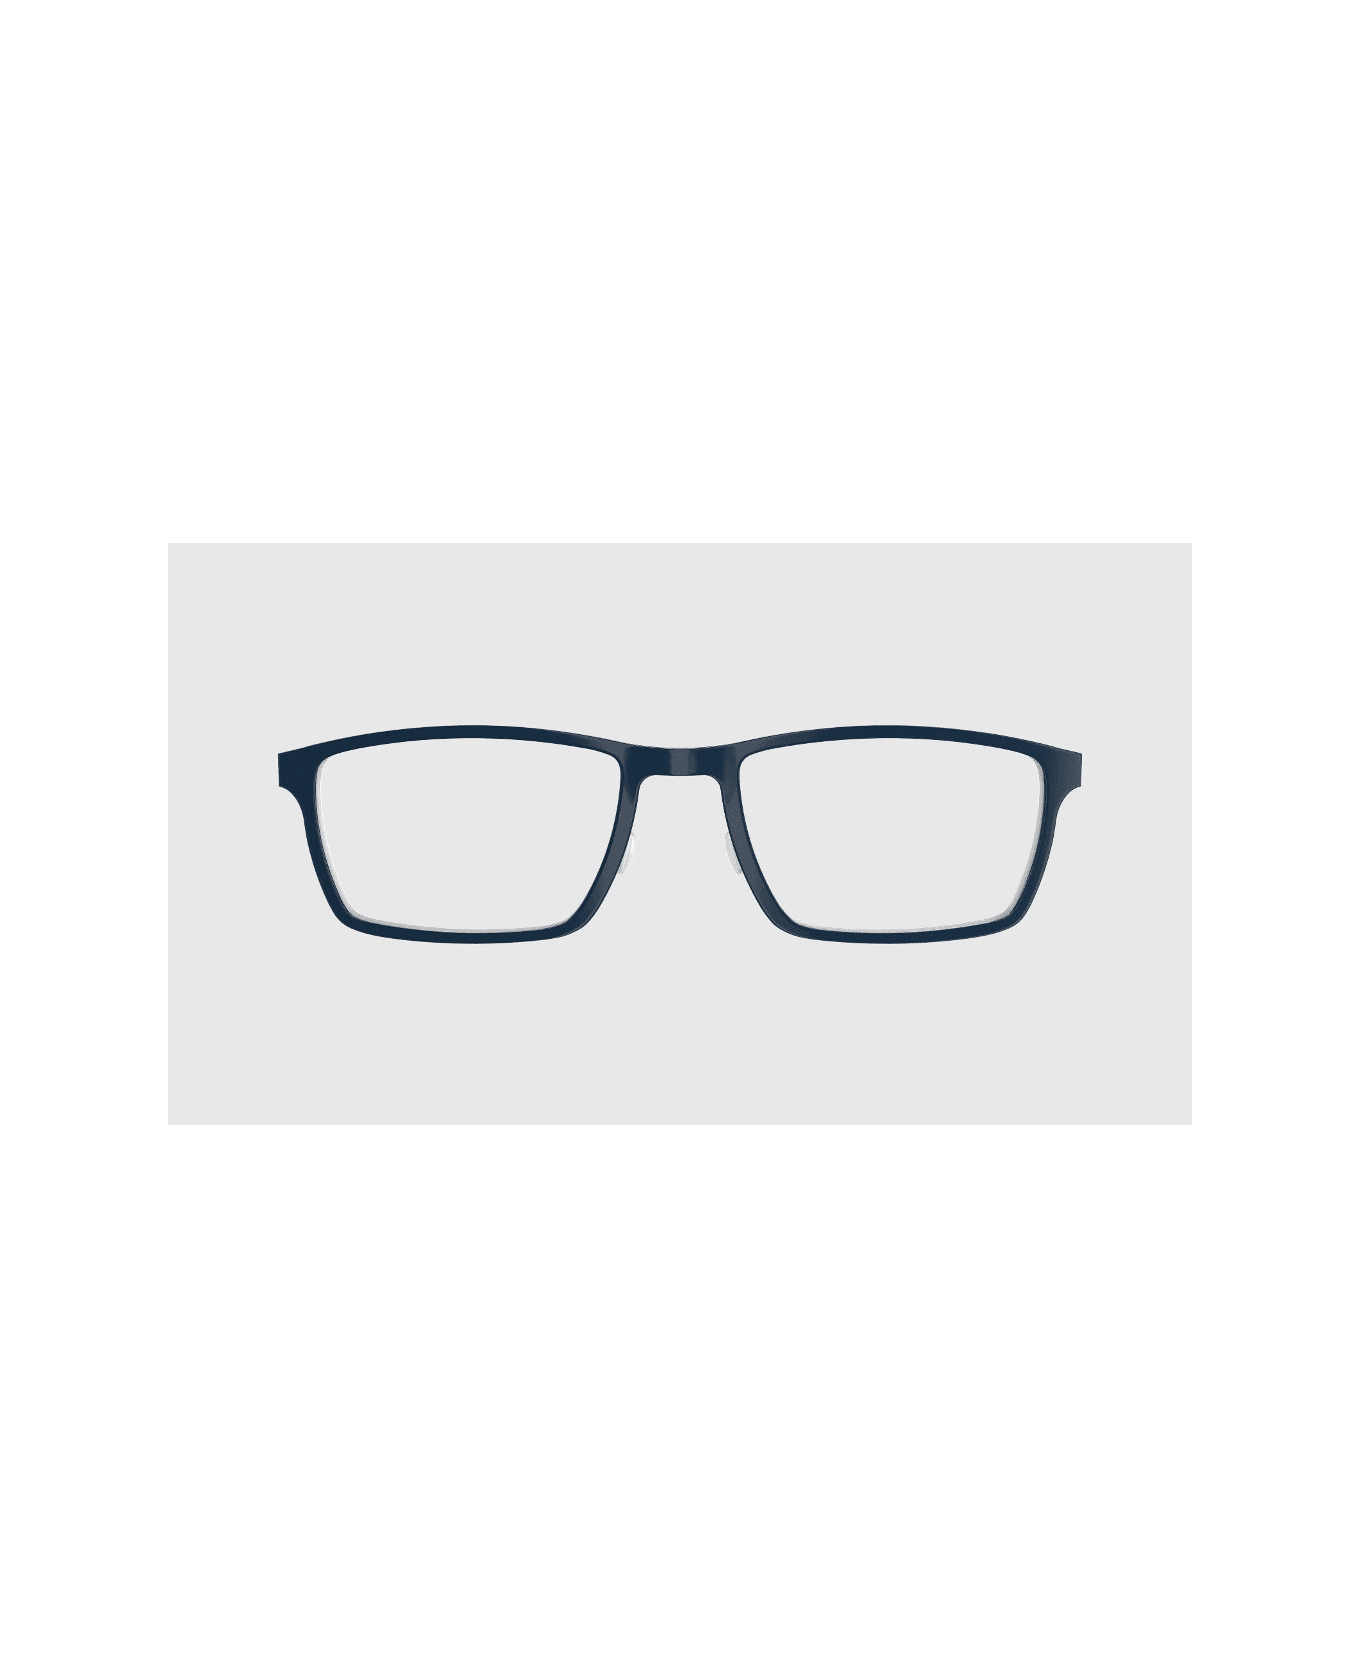 LINDBERG ACE 1228 AH06 Glasses